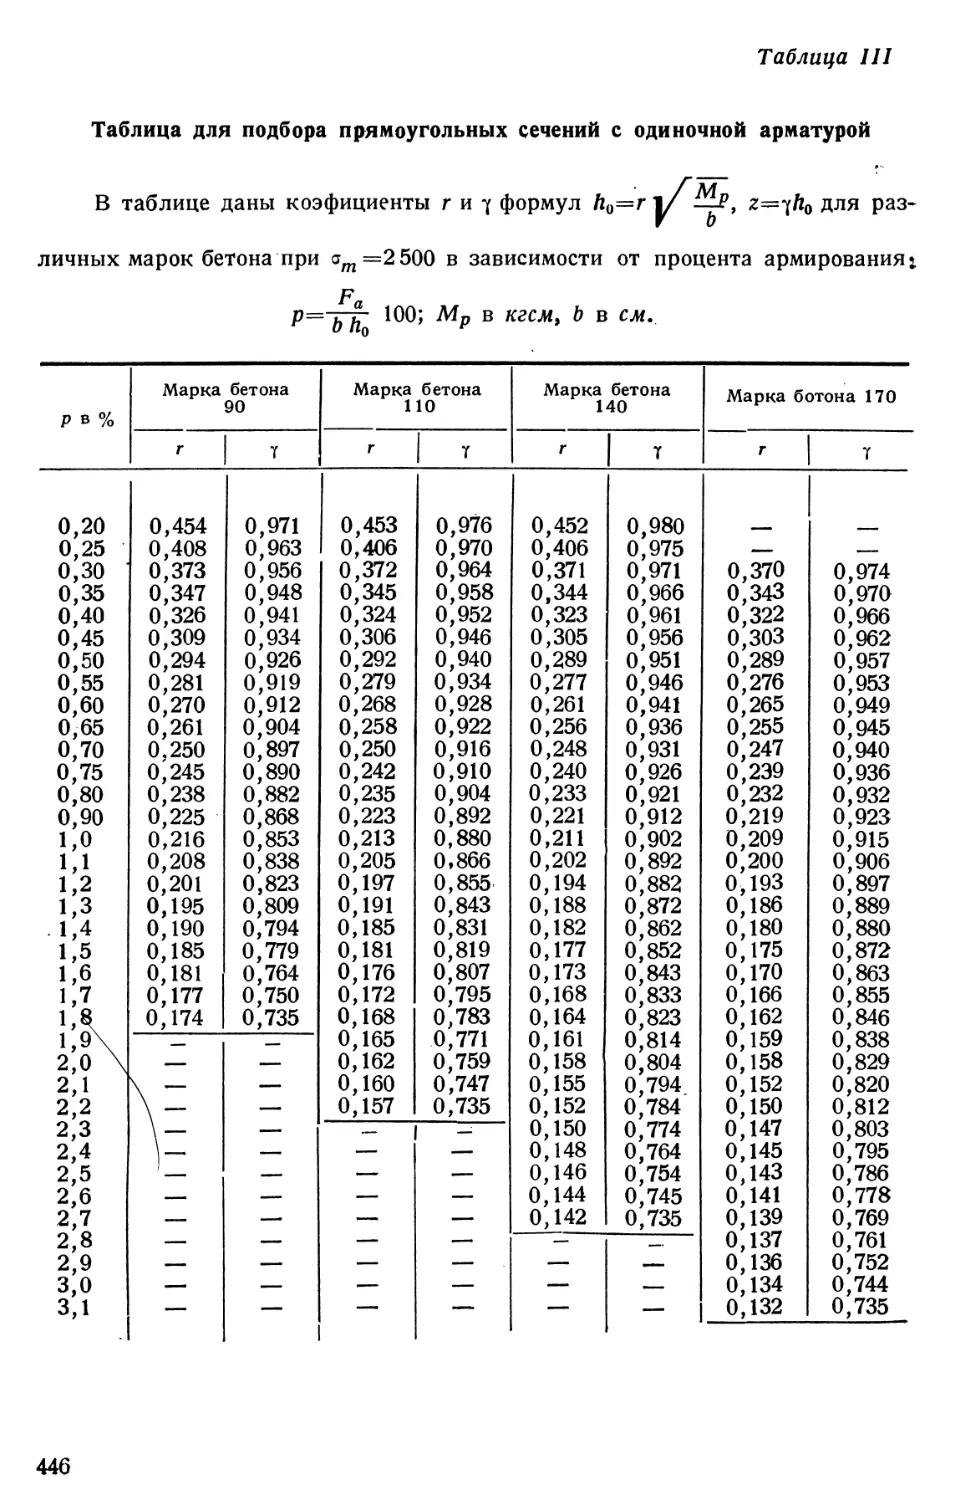 III. Таблица для подбора прямоугольных сечений с одиночной арматурой